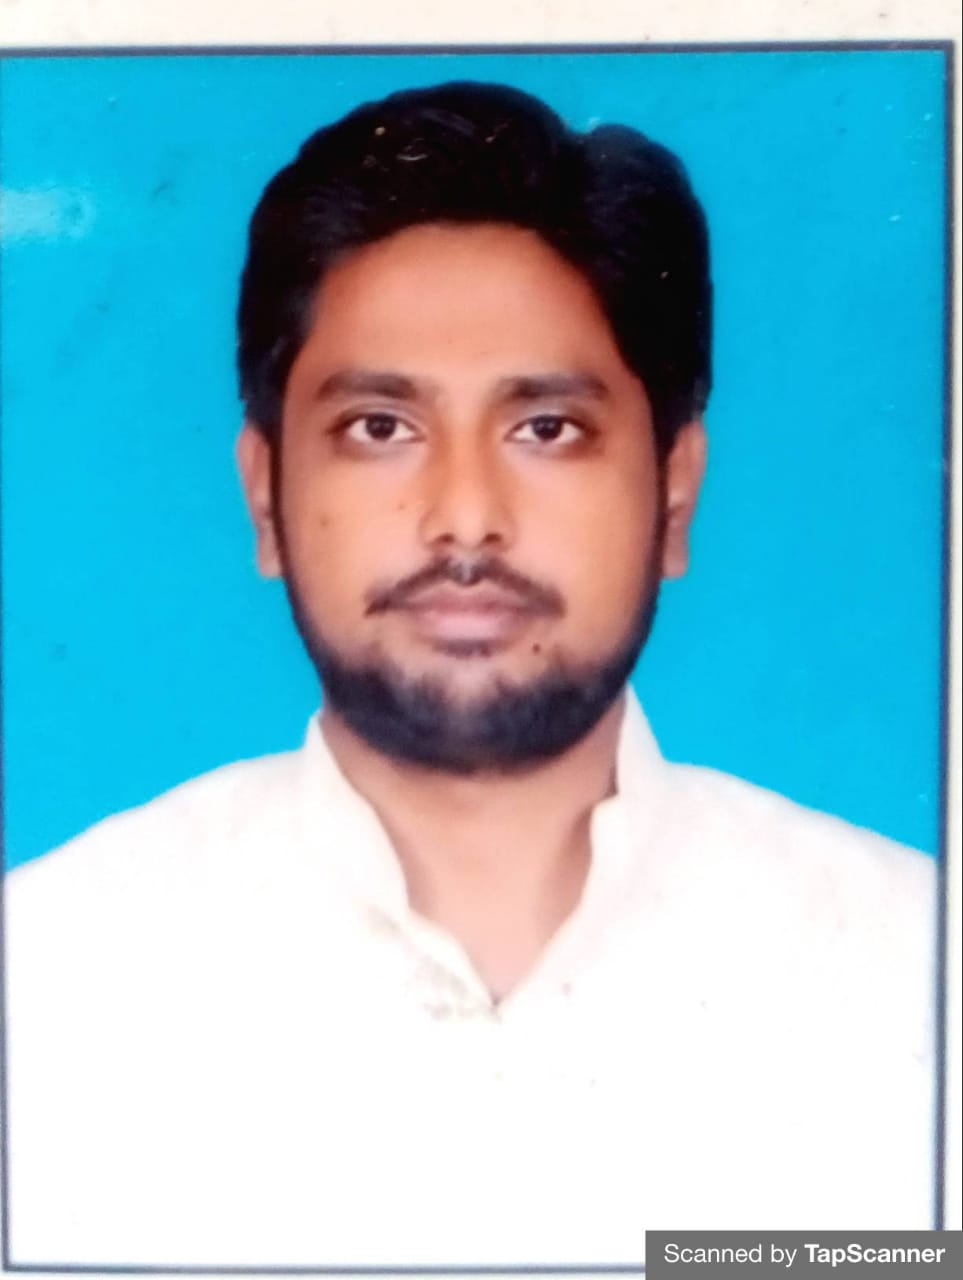 बाज़िदपुर पटना के युवा इंजीनियर मोहम्मद शाकिब अंसारी की हज वेलफेयर सोसायटी में बिहार स्टेट प्रदेश महासचिव पद पर नियुक्ति | New India Times